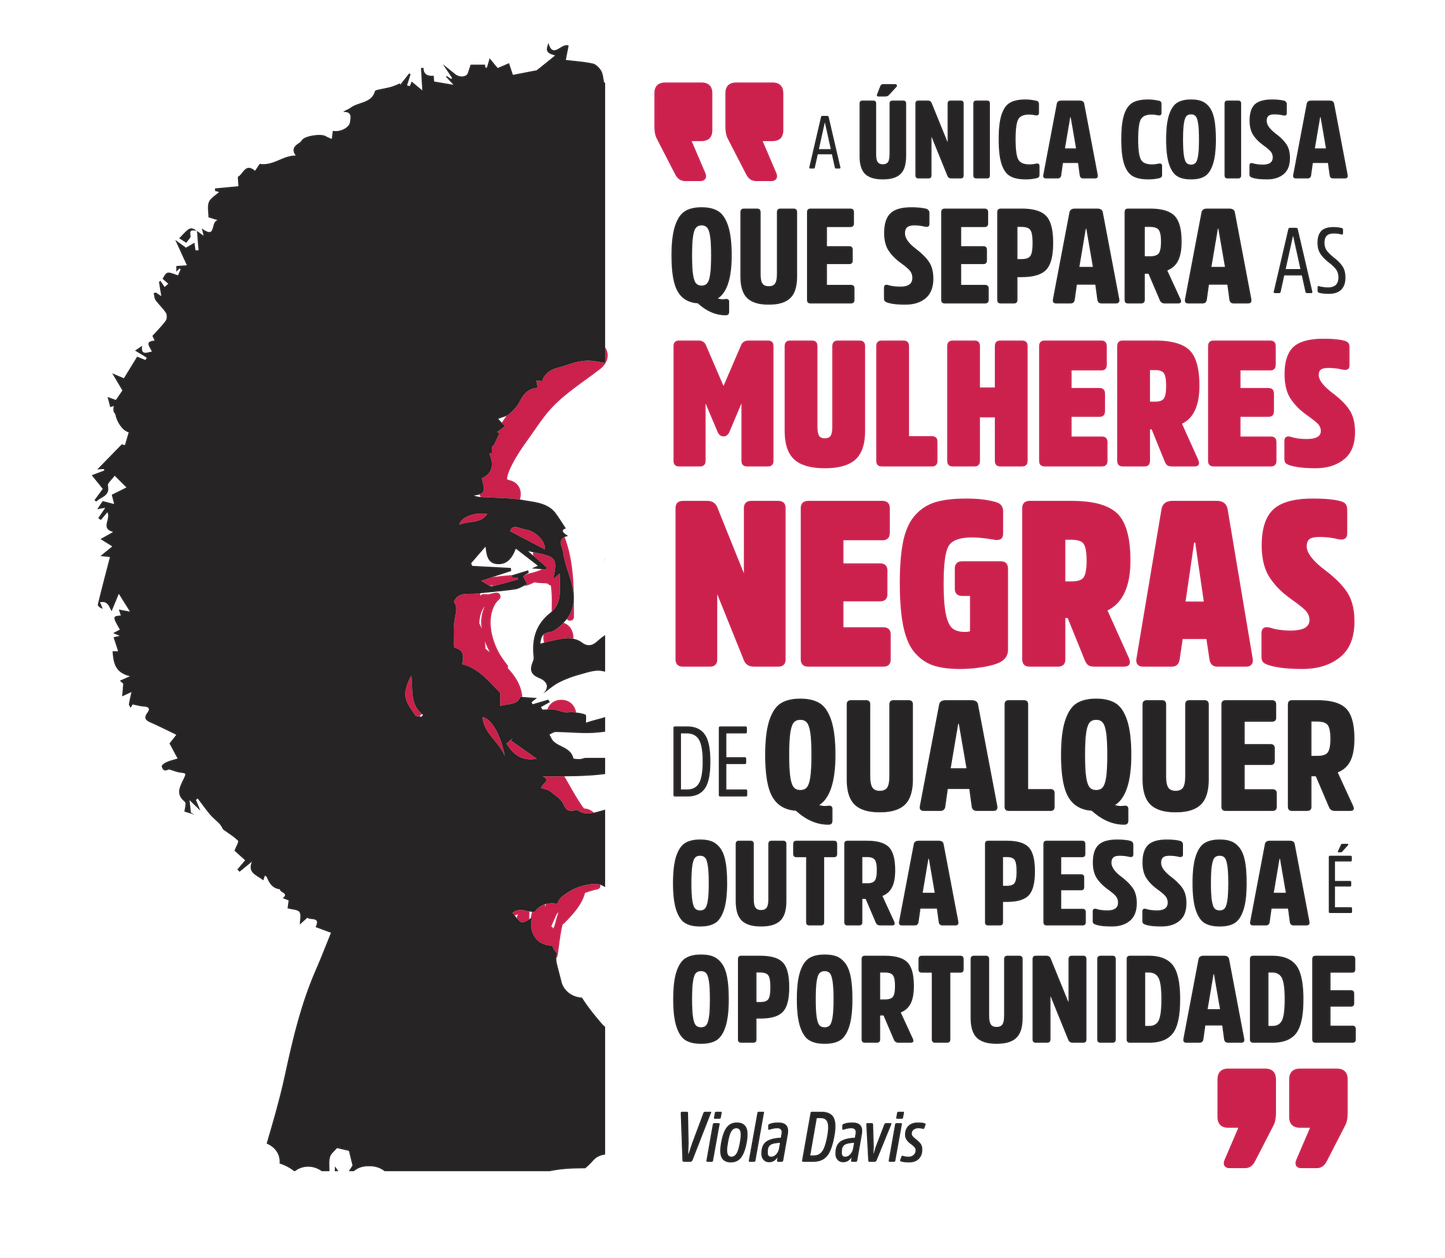 estampa ilustração Viola Davis e a frase a unica coisa que separa as mulheres negras de qualquer outra pessoa é oportunidade